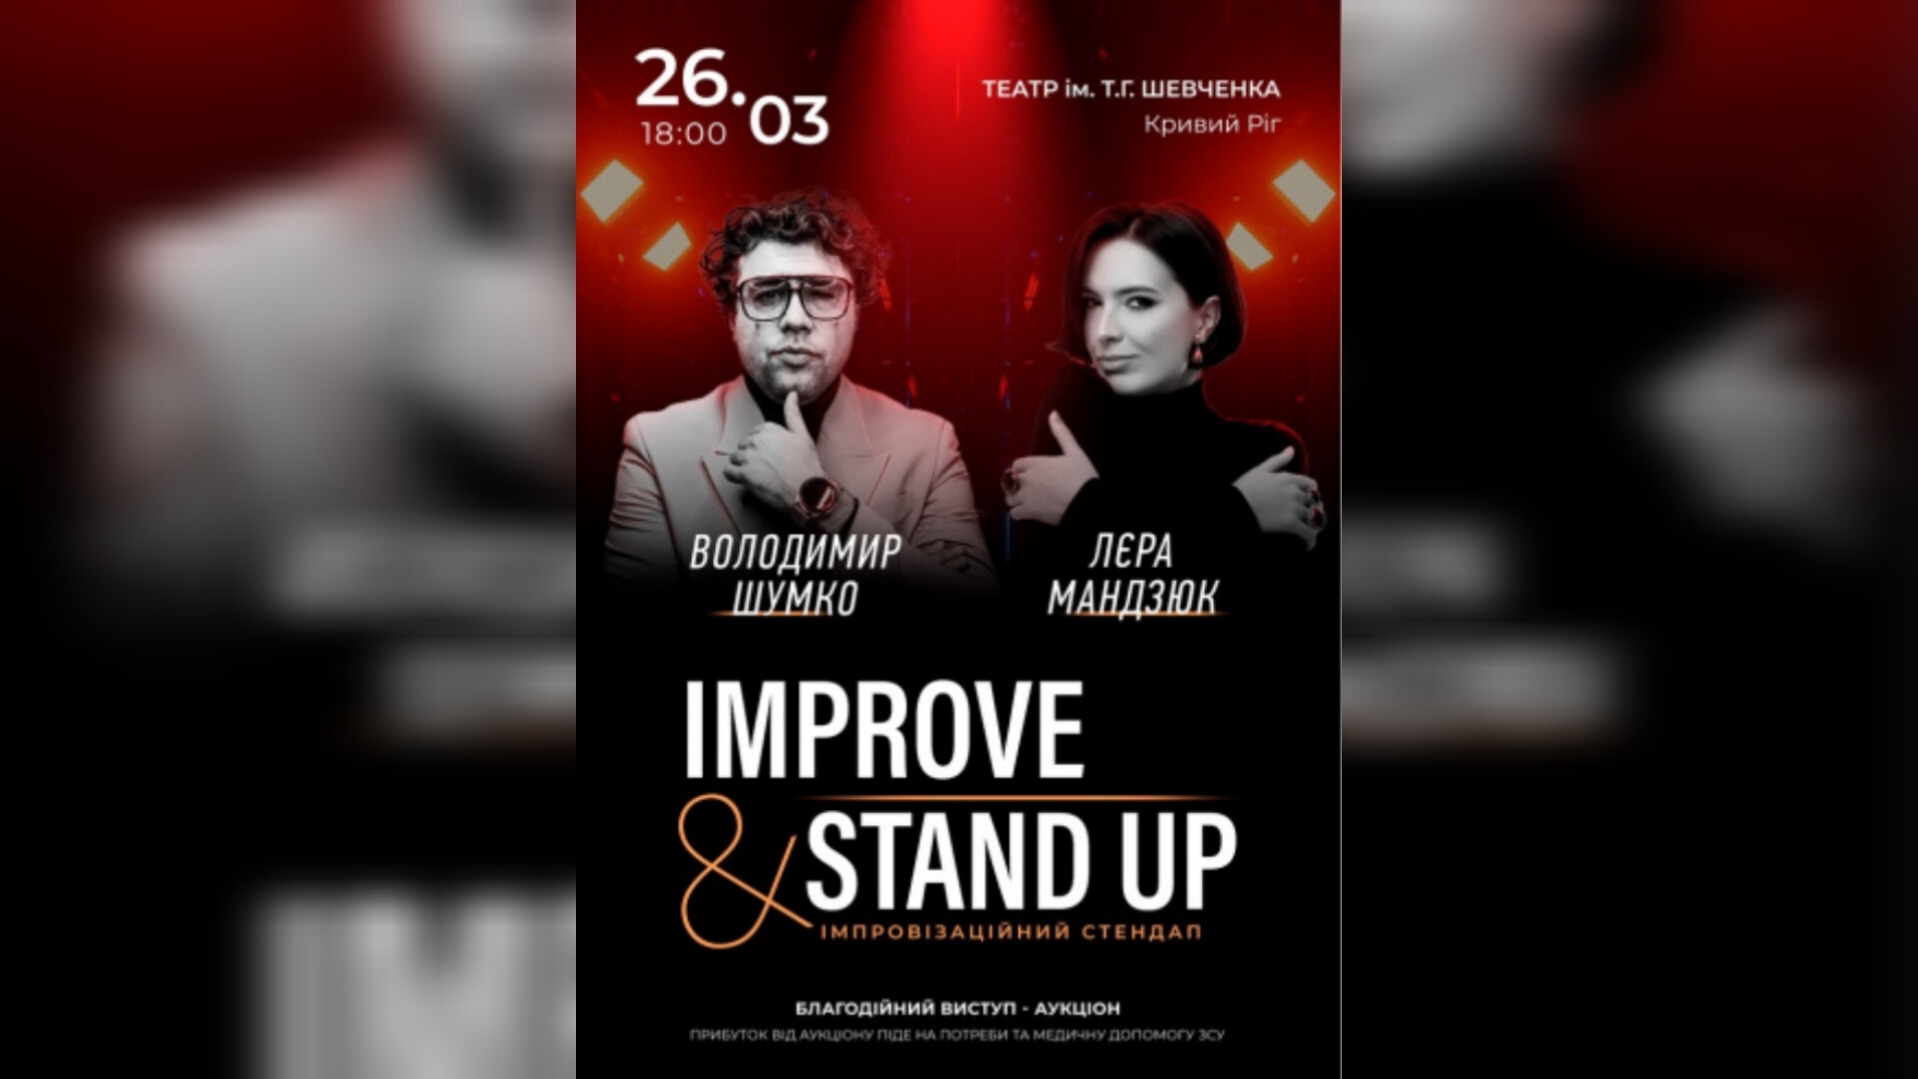 Improve and Stand Up - Володимир Шумко і Лєра Мандзюк у Кривому Розі